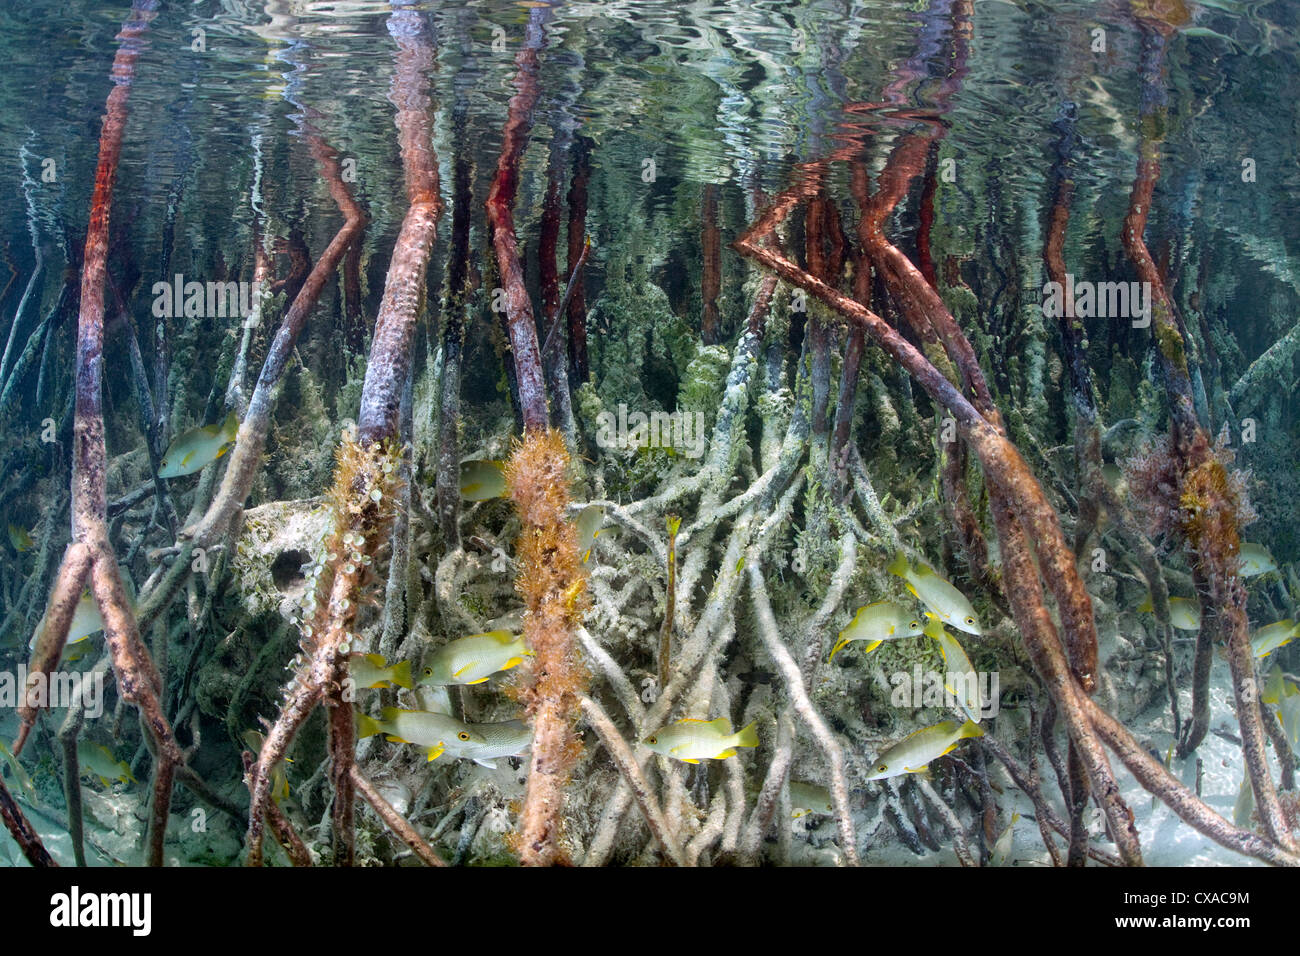 Unterwasser-Blick von einem Mangroven-Baum Wurzeln auf den Bahamas. Stockfoto